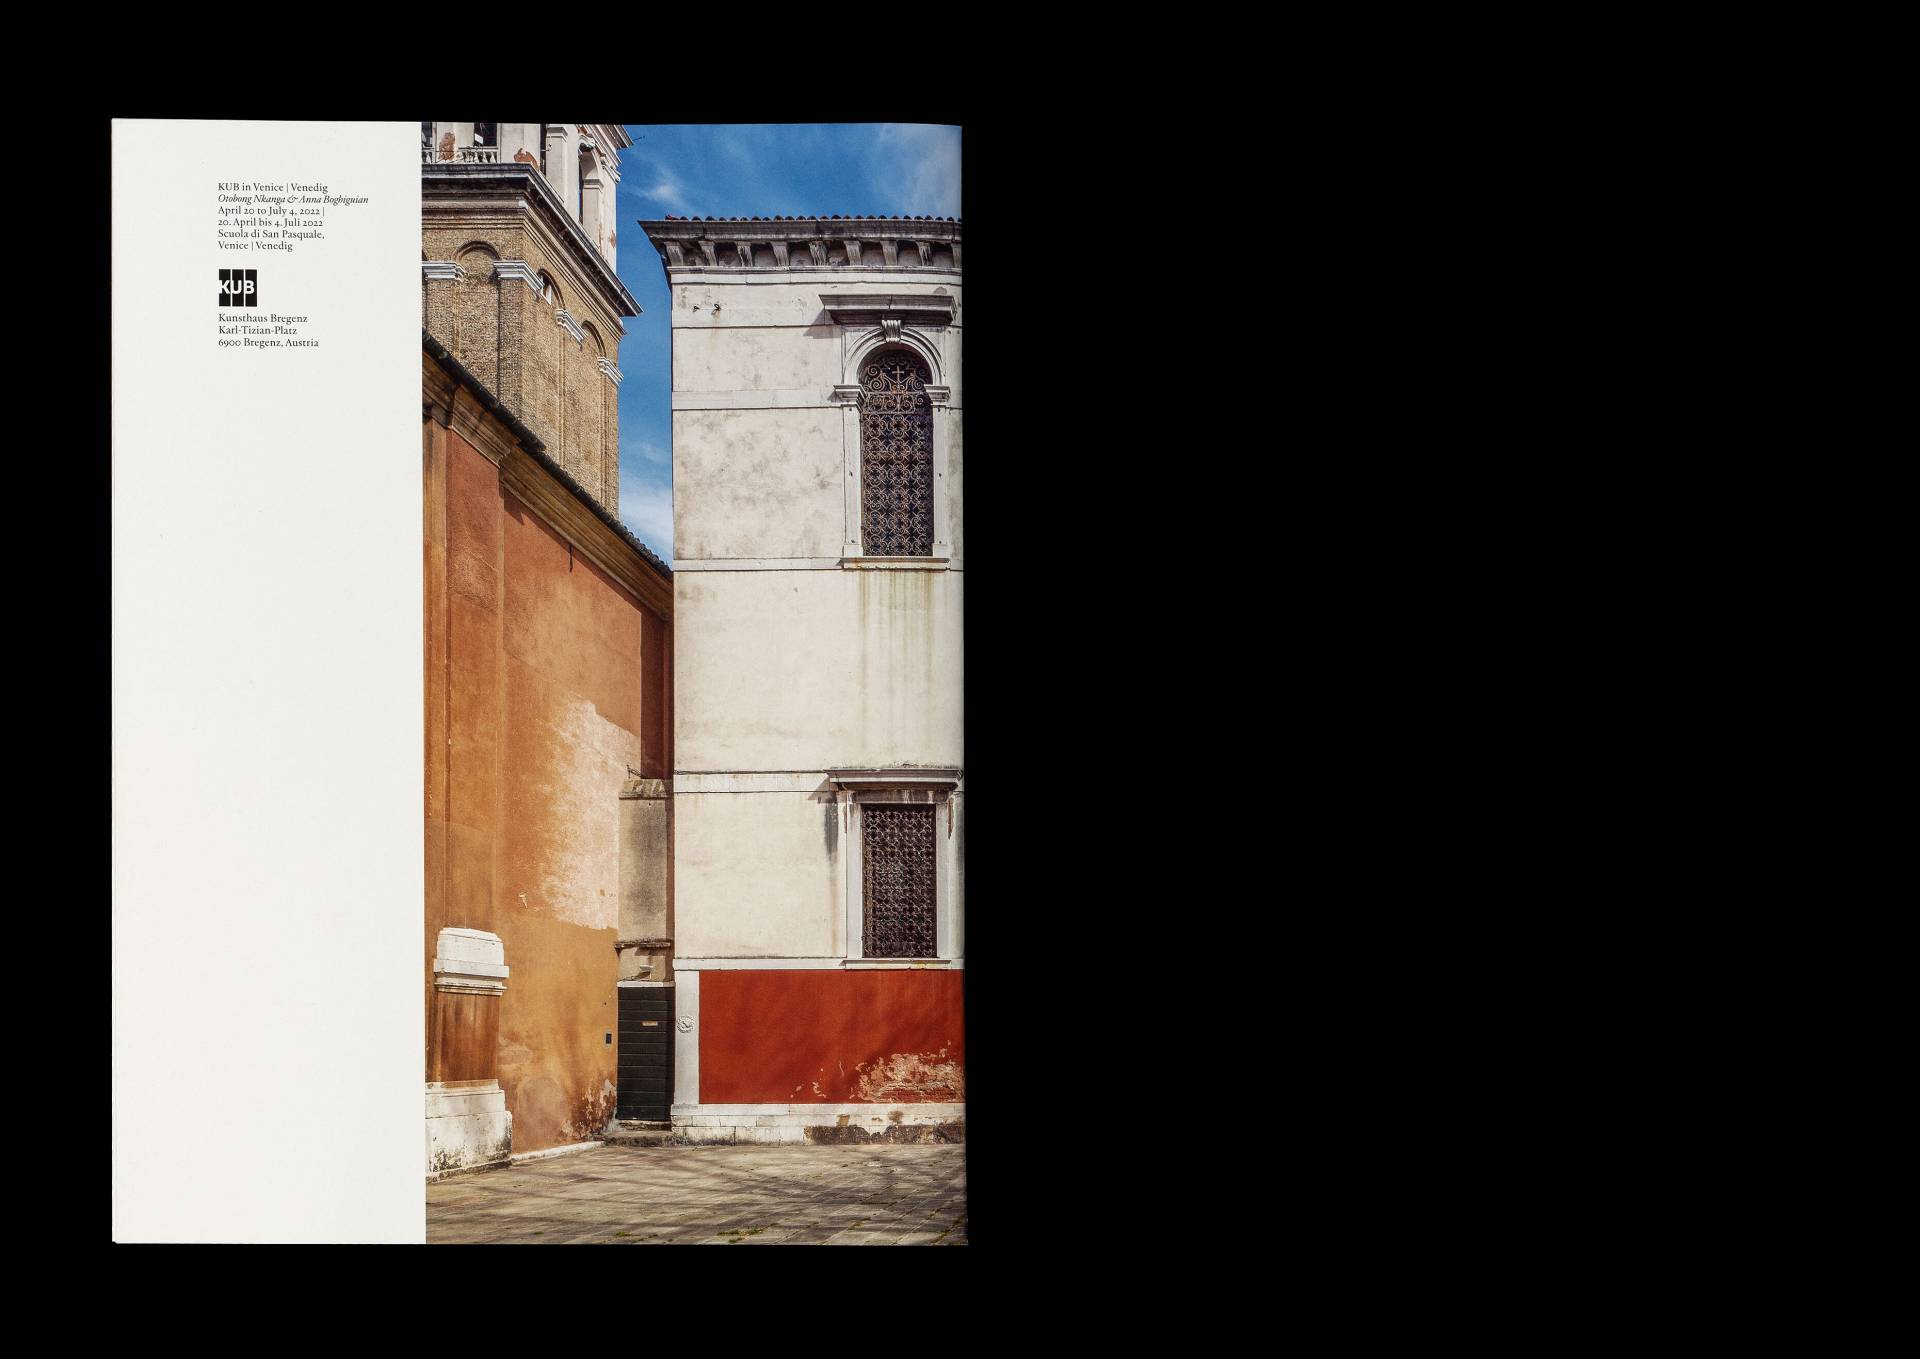 Publikation »KUB in Venedig« für das Kunsthaus Bregenz